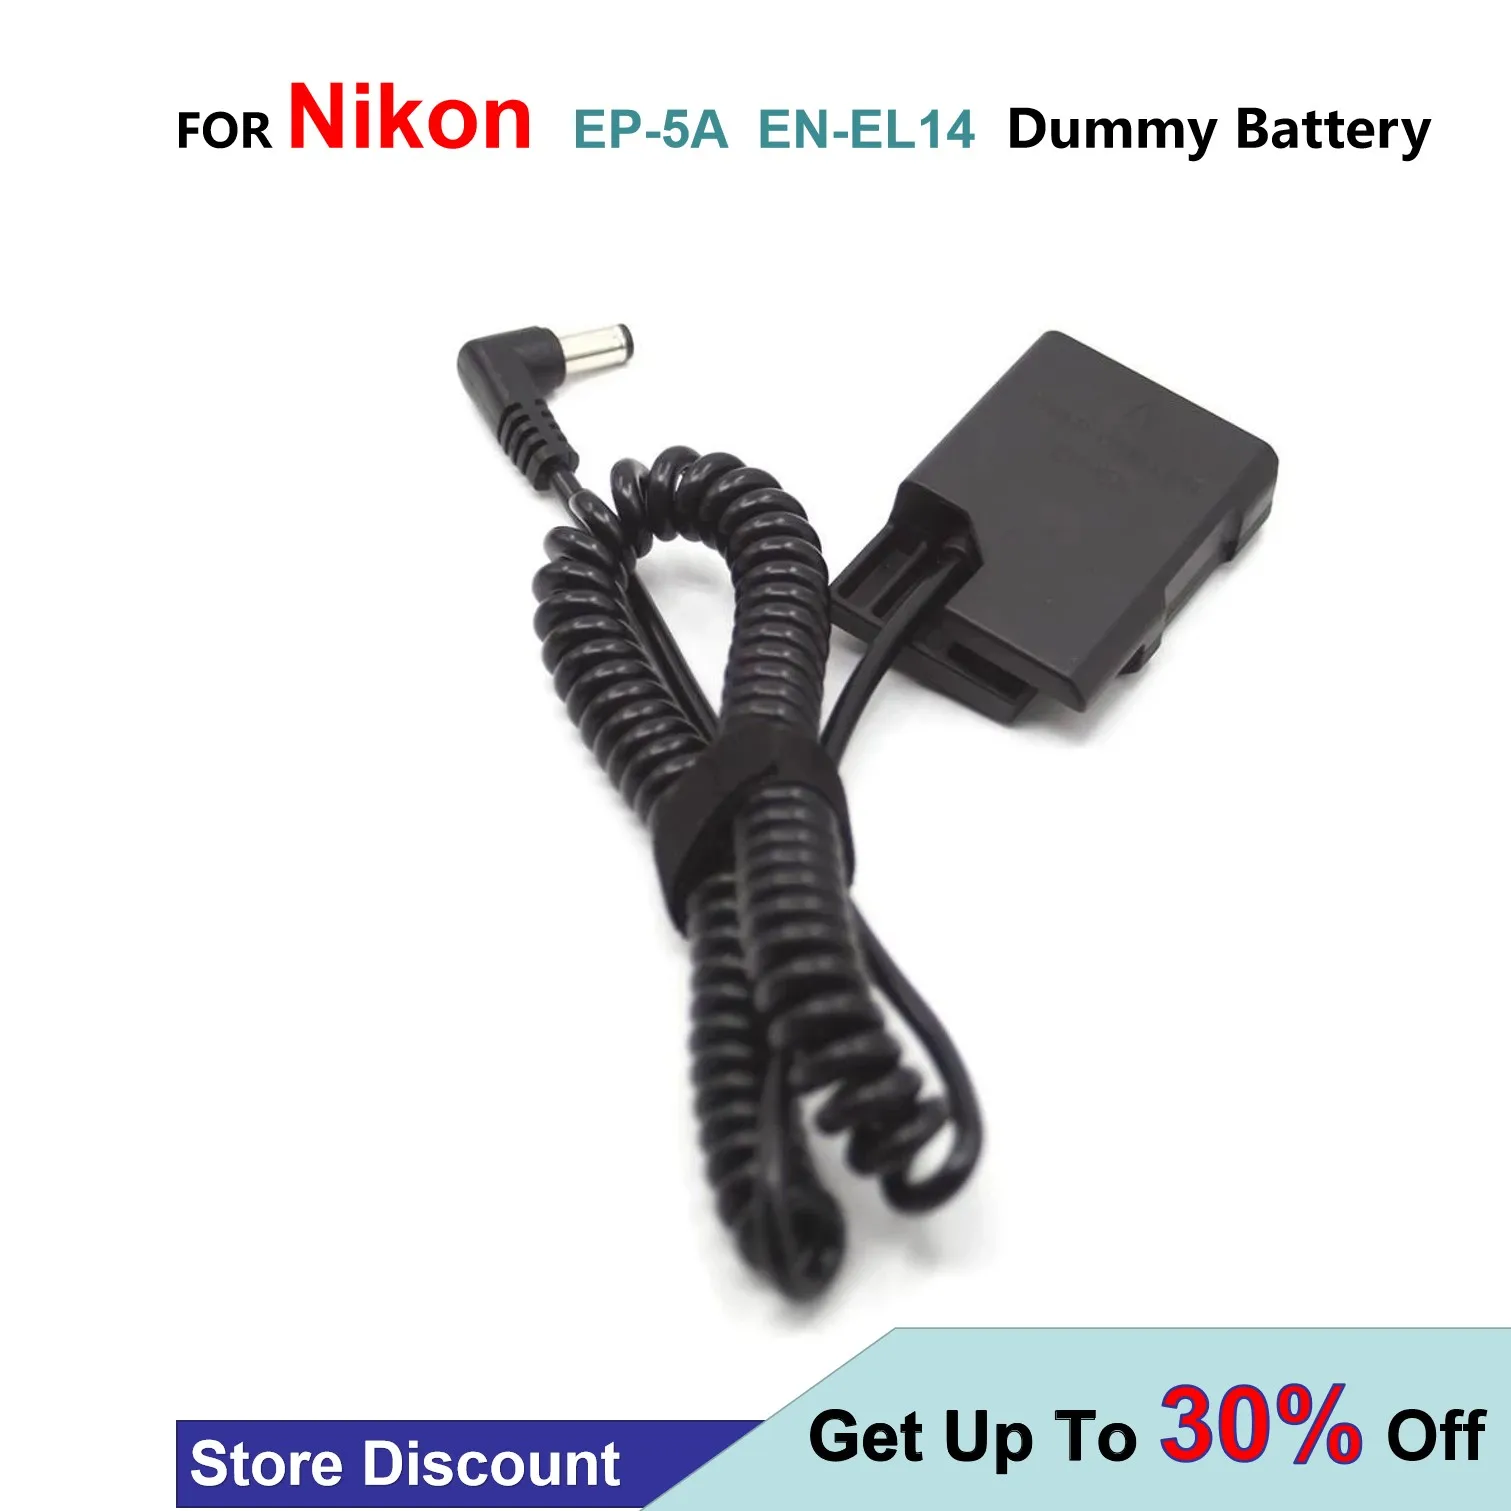 

EN-EL14 Dummy Battery EP-5A Spring Cable DC Coupler For Nikon P7800 P7700 P7100 D5600 D5500 D5300 D5200 D5100 D3400 D3300